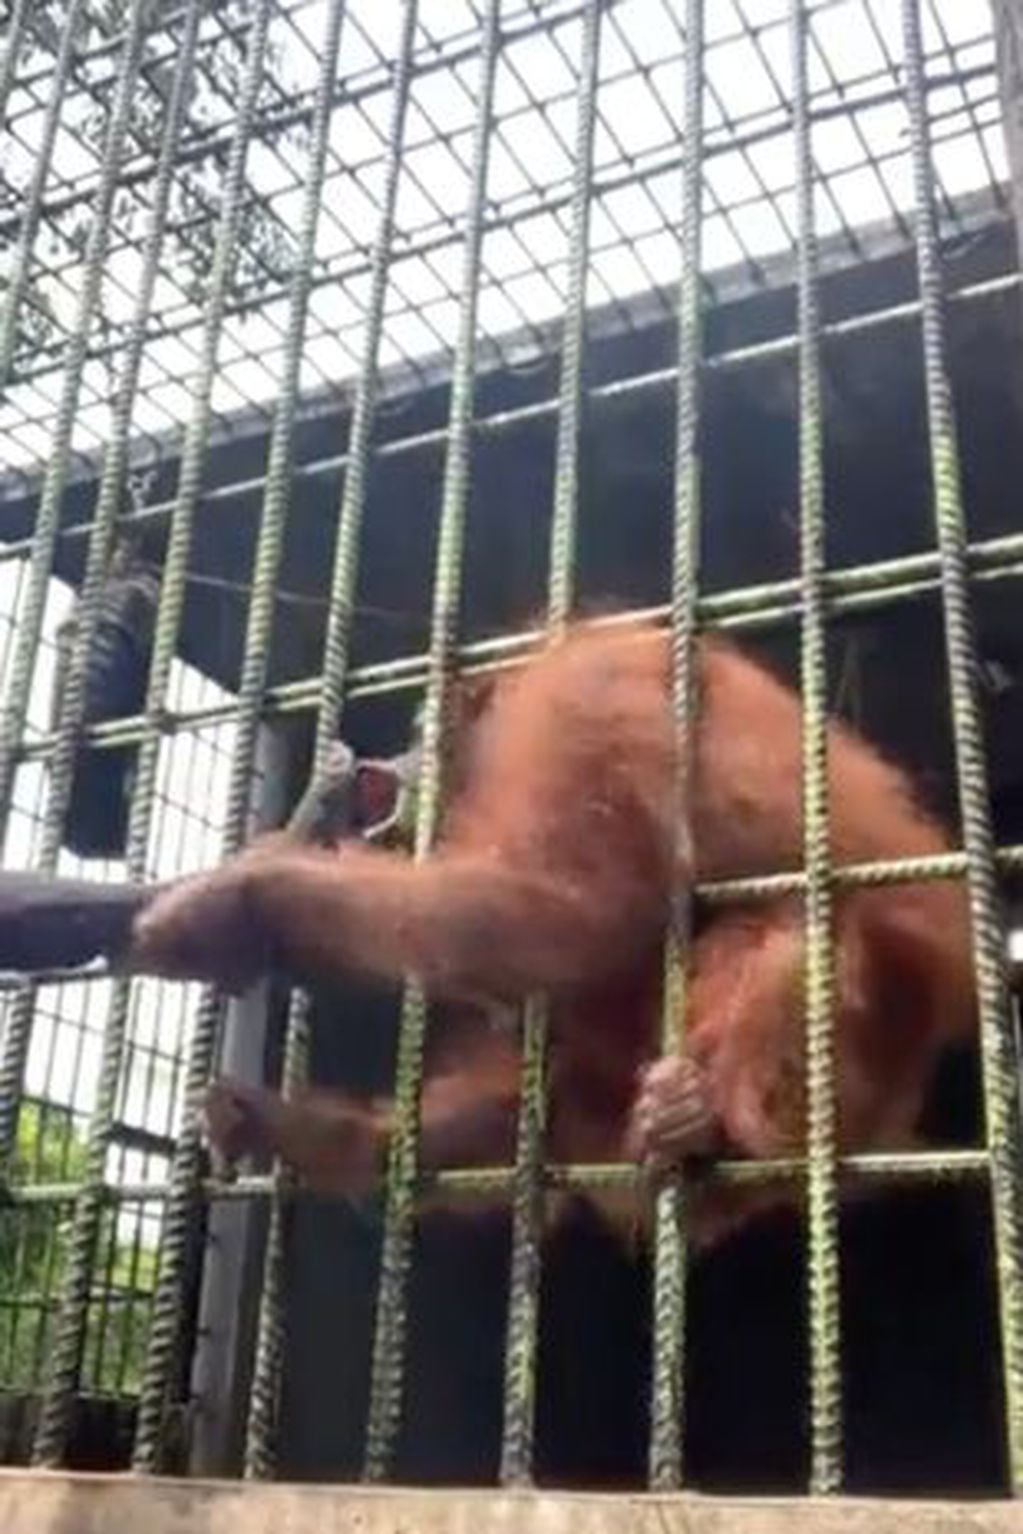 Un orangután atrapó a un turista en un zoológico y casi le arranca la pierna.